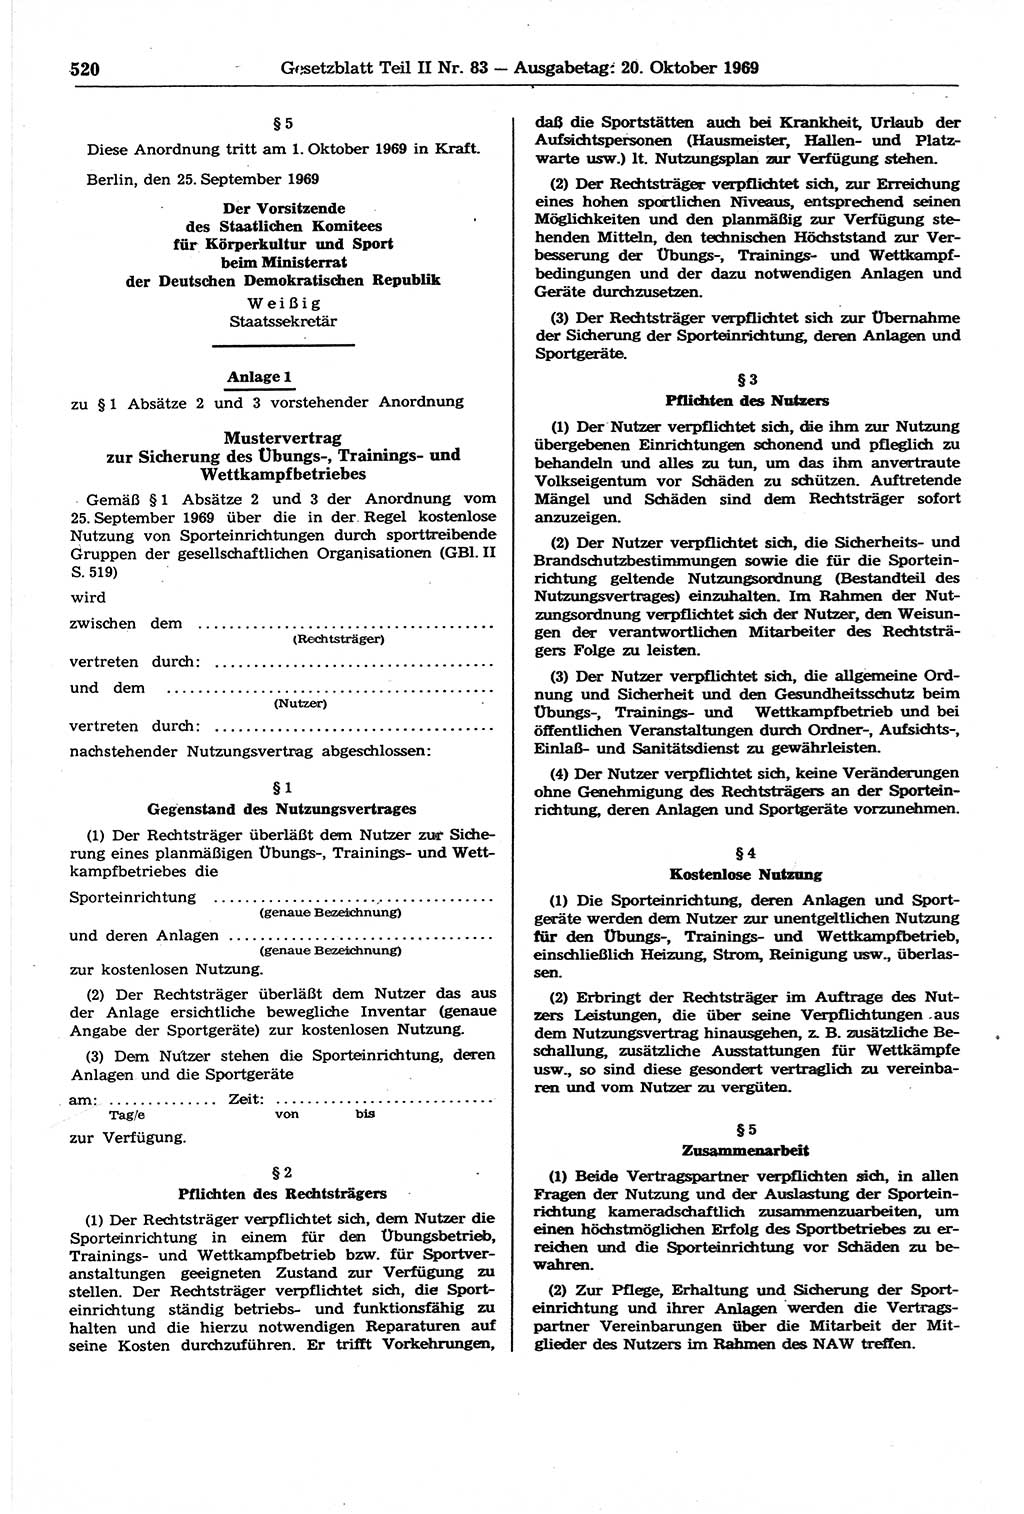 Gesetzblatt (GBl.) der Deutschen Demokratischen Republik (DDR) Teil ⅠⅠ 1969, Seite 520 (GBl. DDR ⅠⅠ 1969, S. 520)